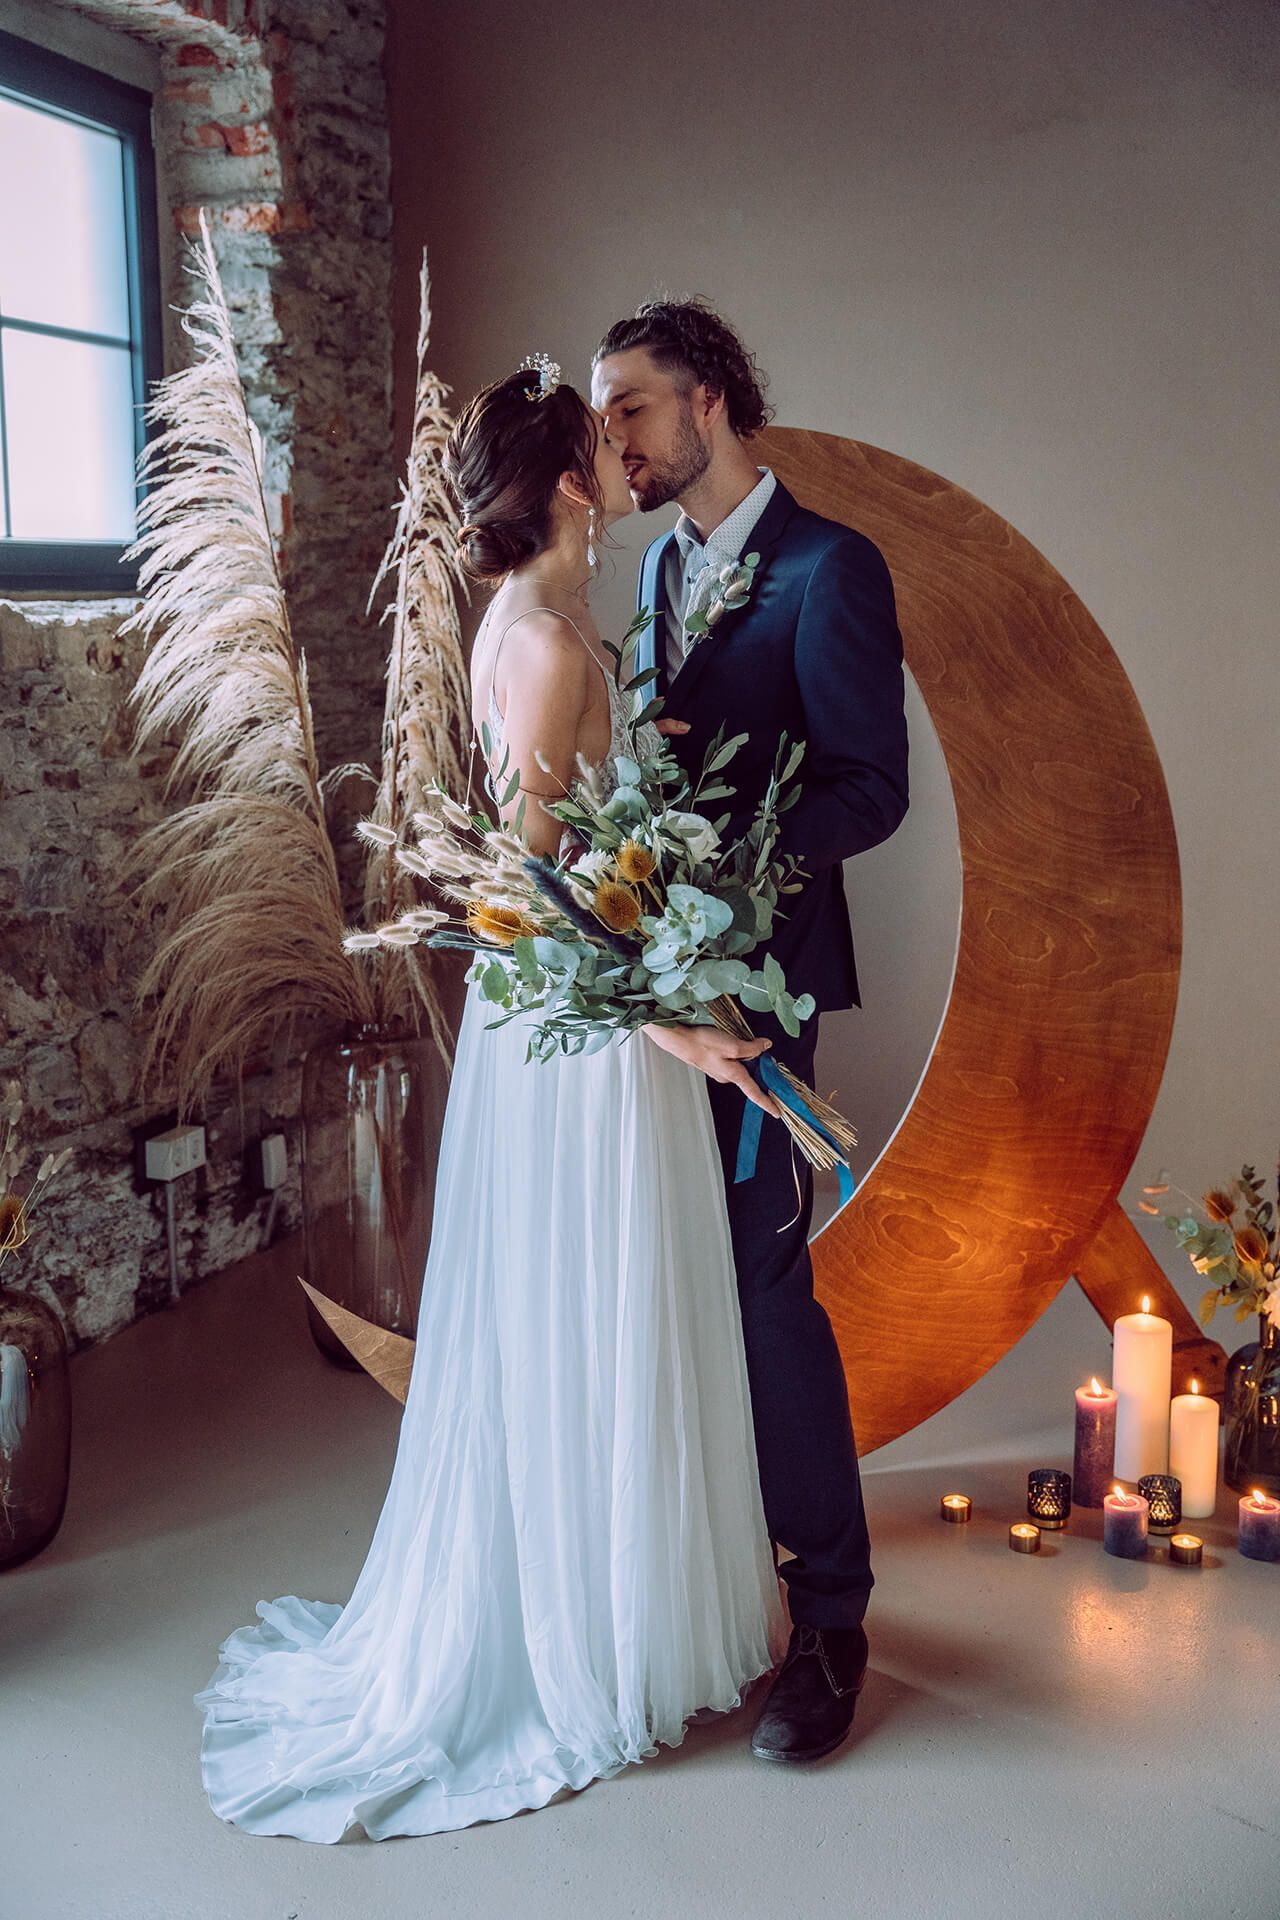 Hochzeitsworkshop Stars & Glitter - Brautpaar Fotoshooting - Holzmond Hintergrund